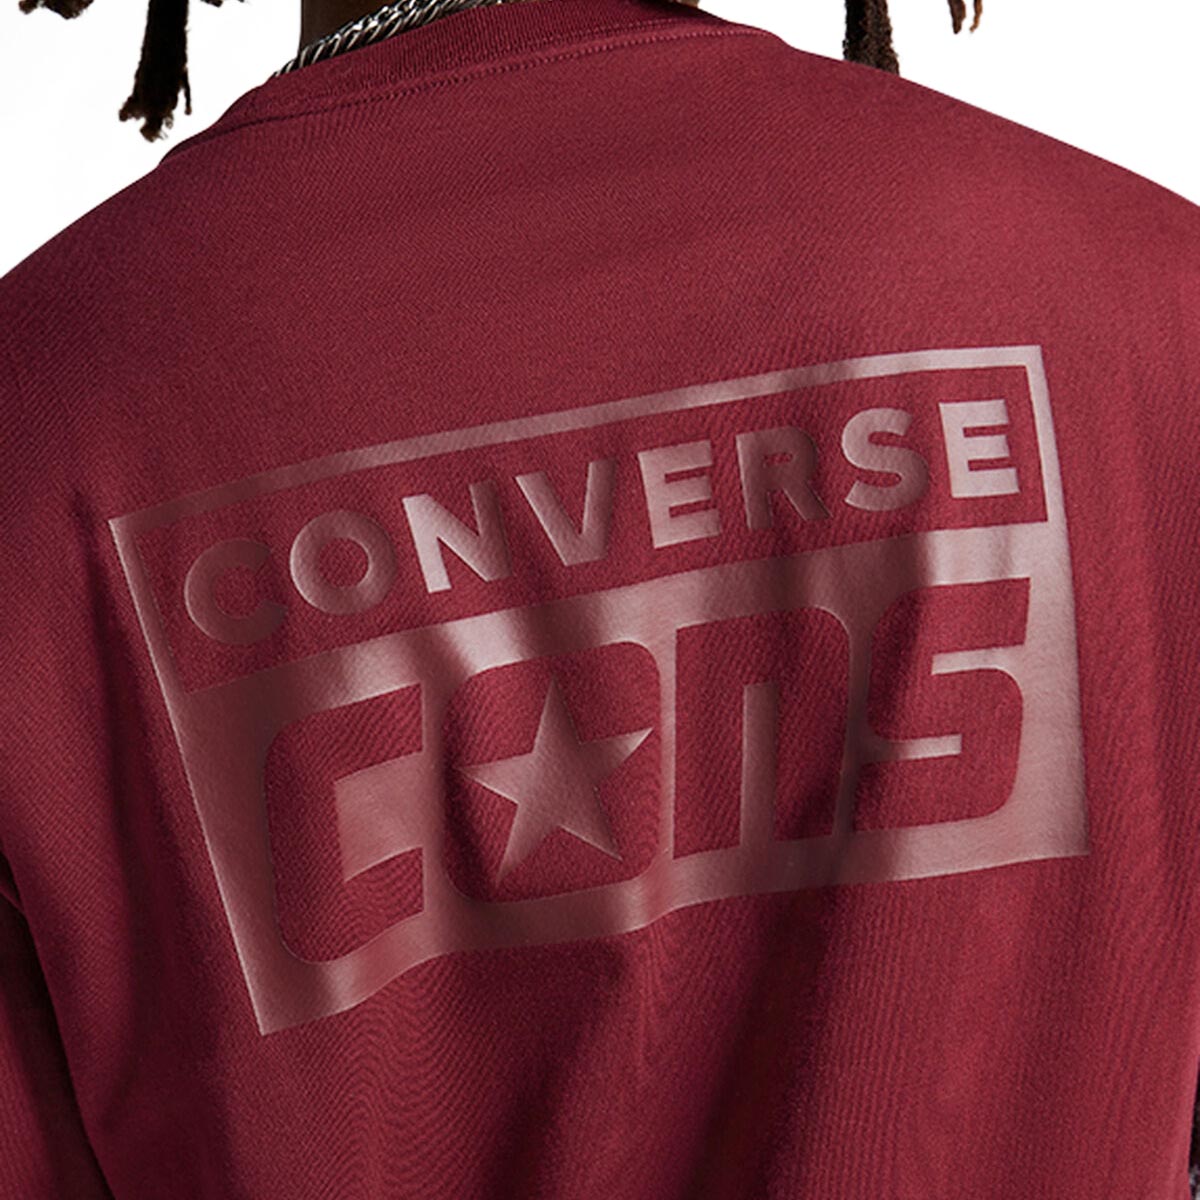 Converse Graphic T-Shirt - Deep Bordeaux image 4